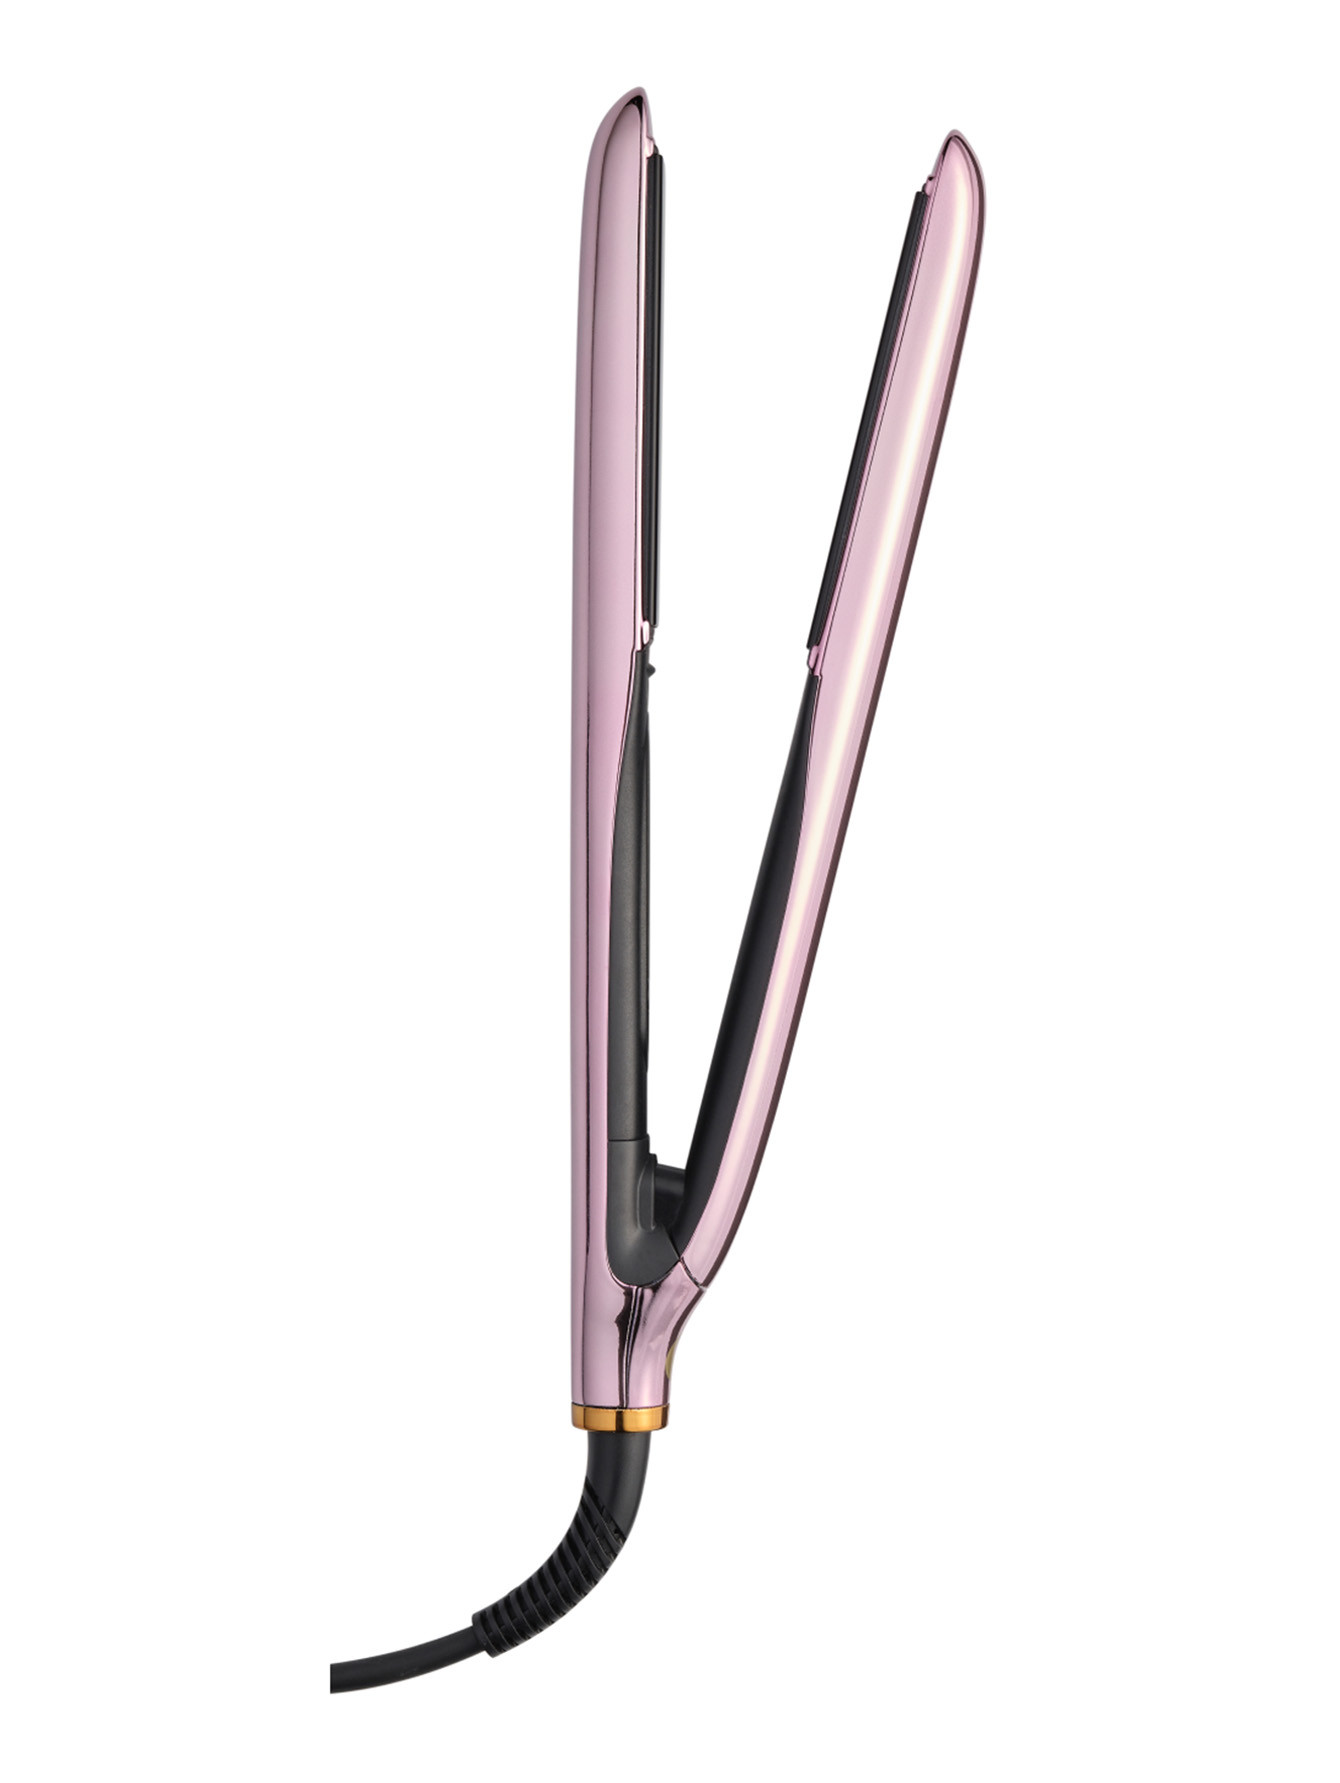 Стайлер для выпрямления волос True Divinity MK2 Pink Champagne - Общий вид